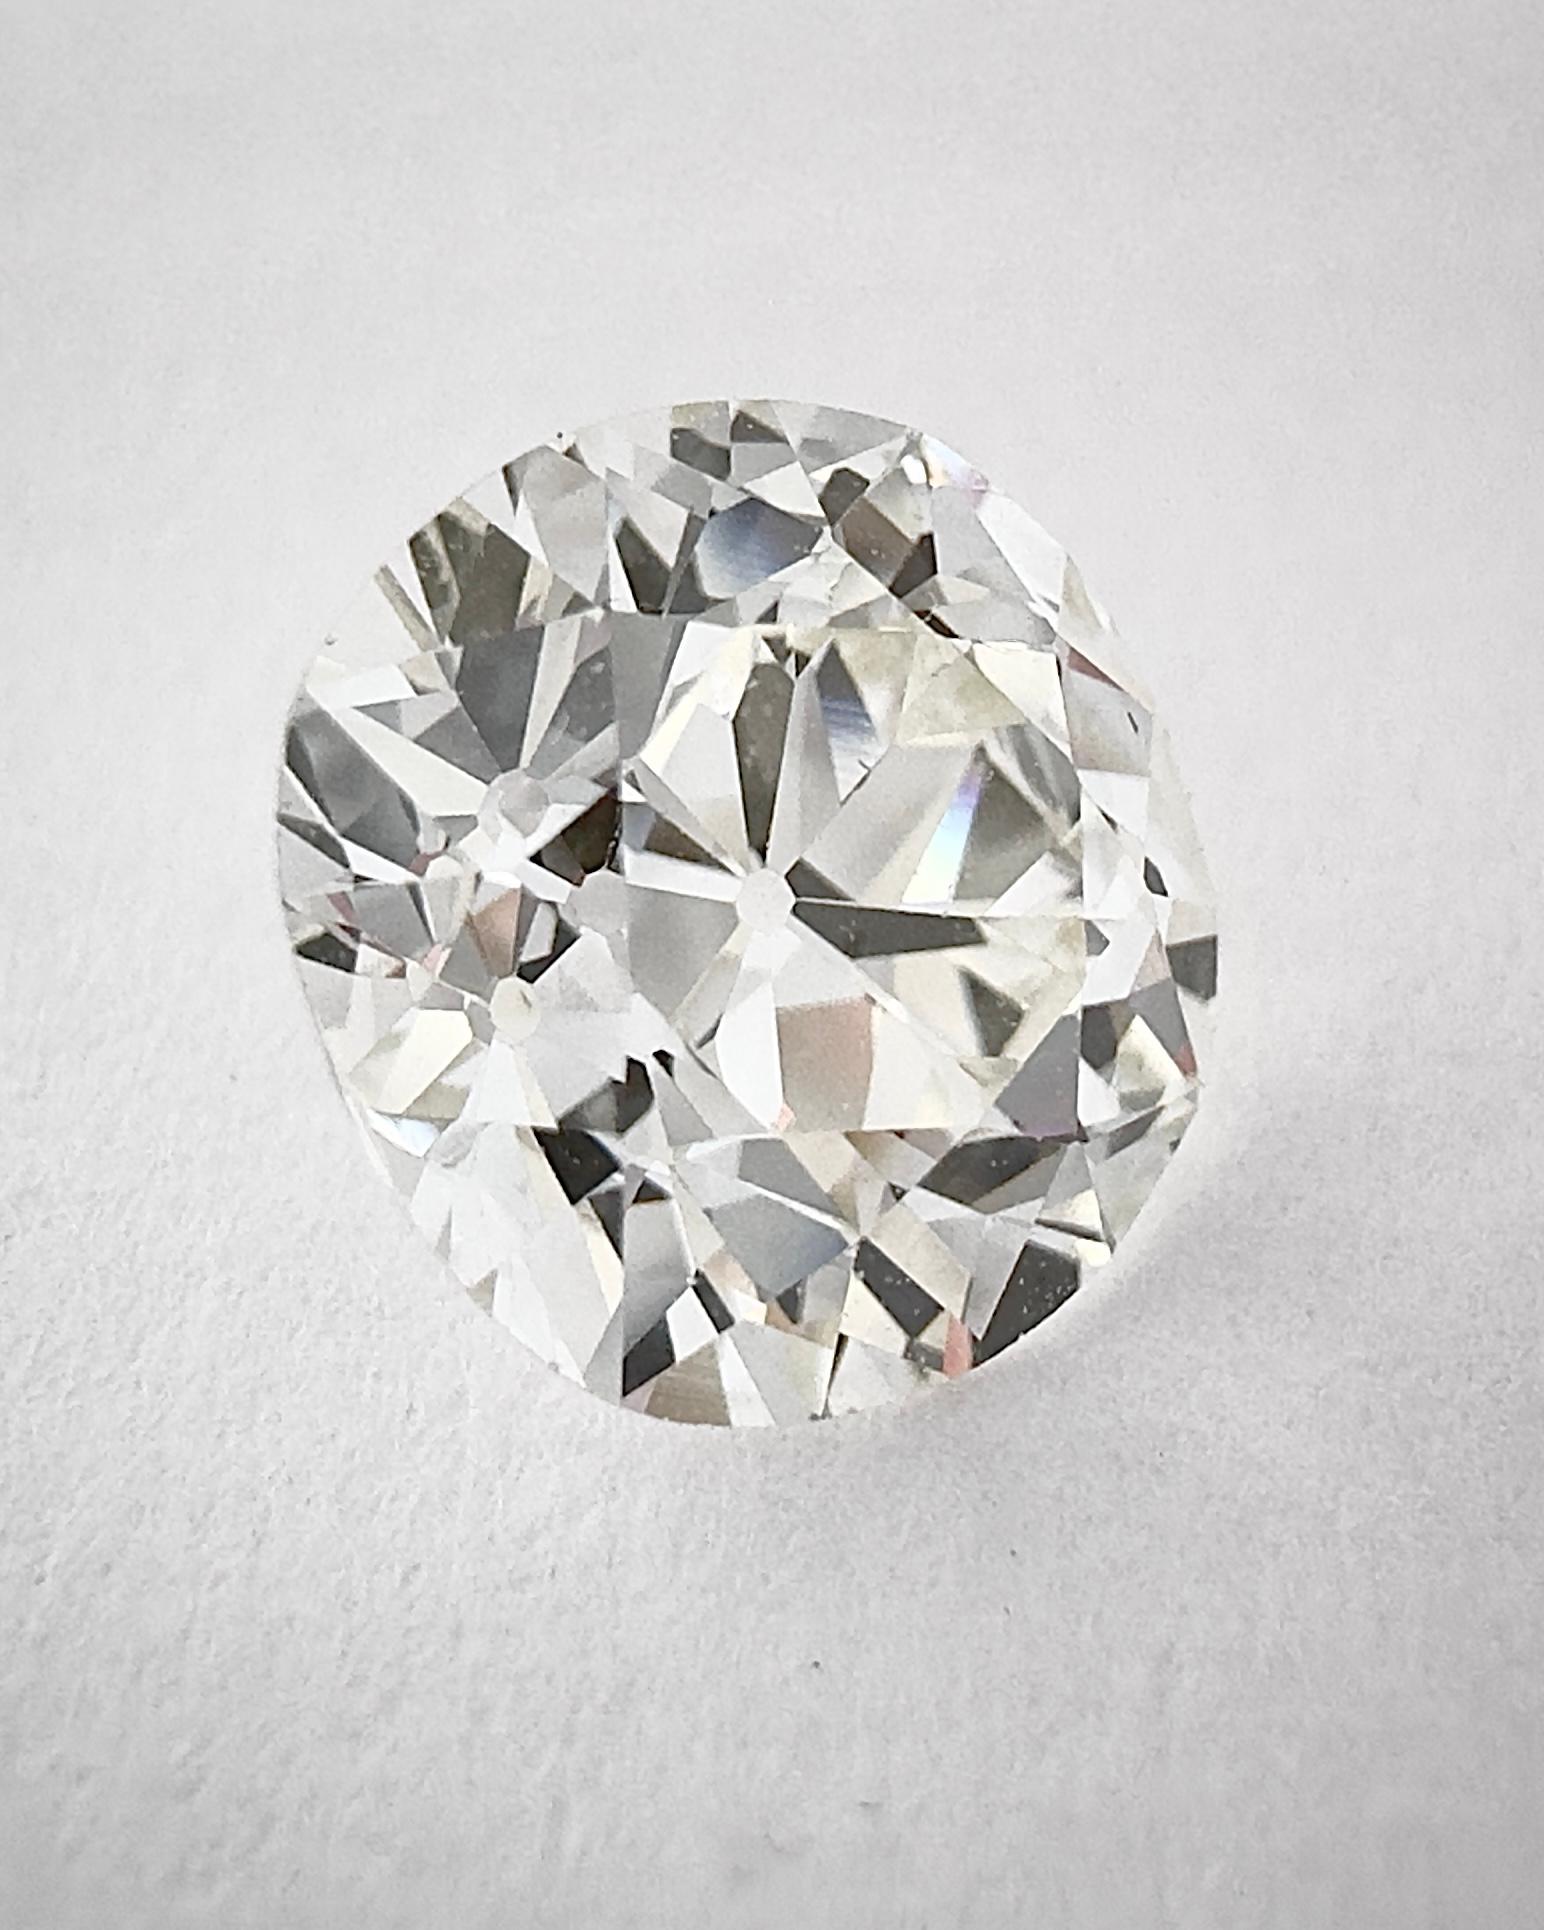 Este Diamante Antiguo de Mina Vieja talla Cojín Brillante pesa 2,12 quilates con un color J (Bonito blanco cara arriba) y una Claridad VVS2 (Limpio a Lupa).
La alta calidad de su talla permite que la piedra revele un brillo increíble.
Lo interesante